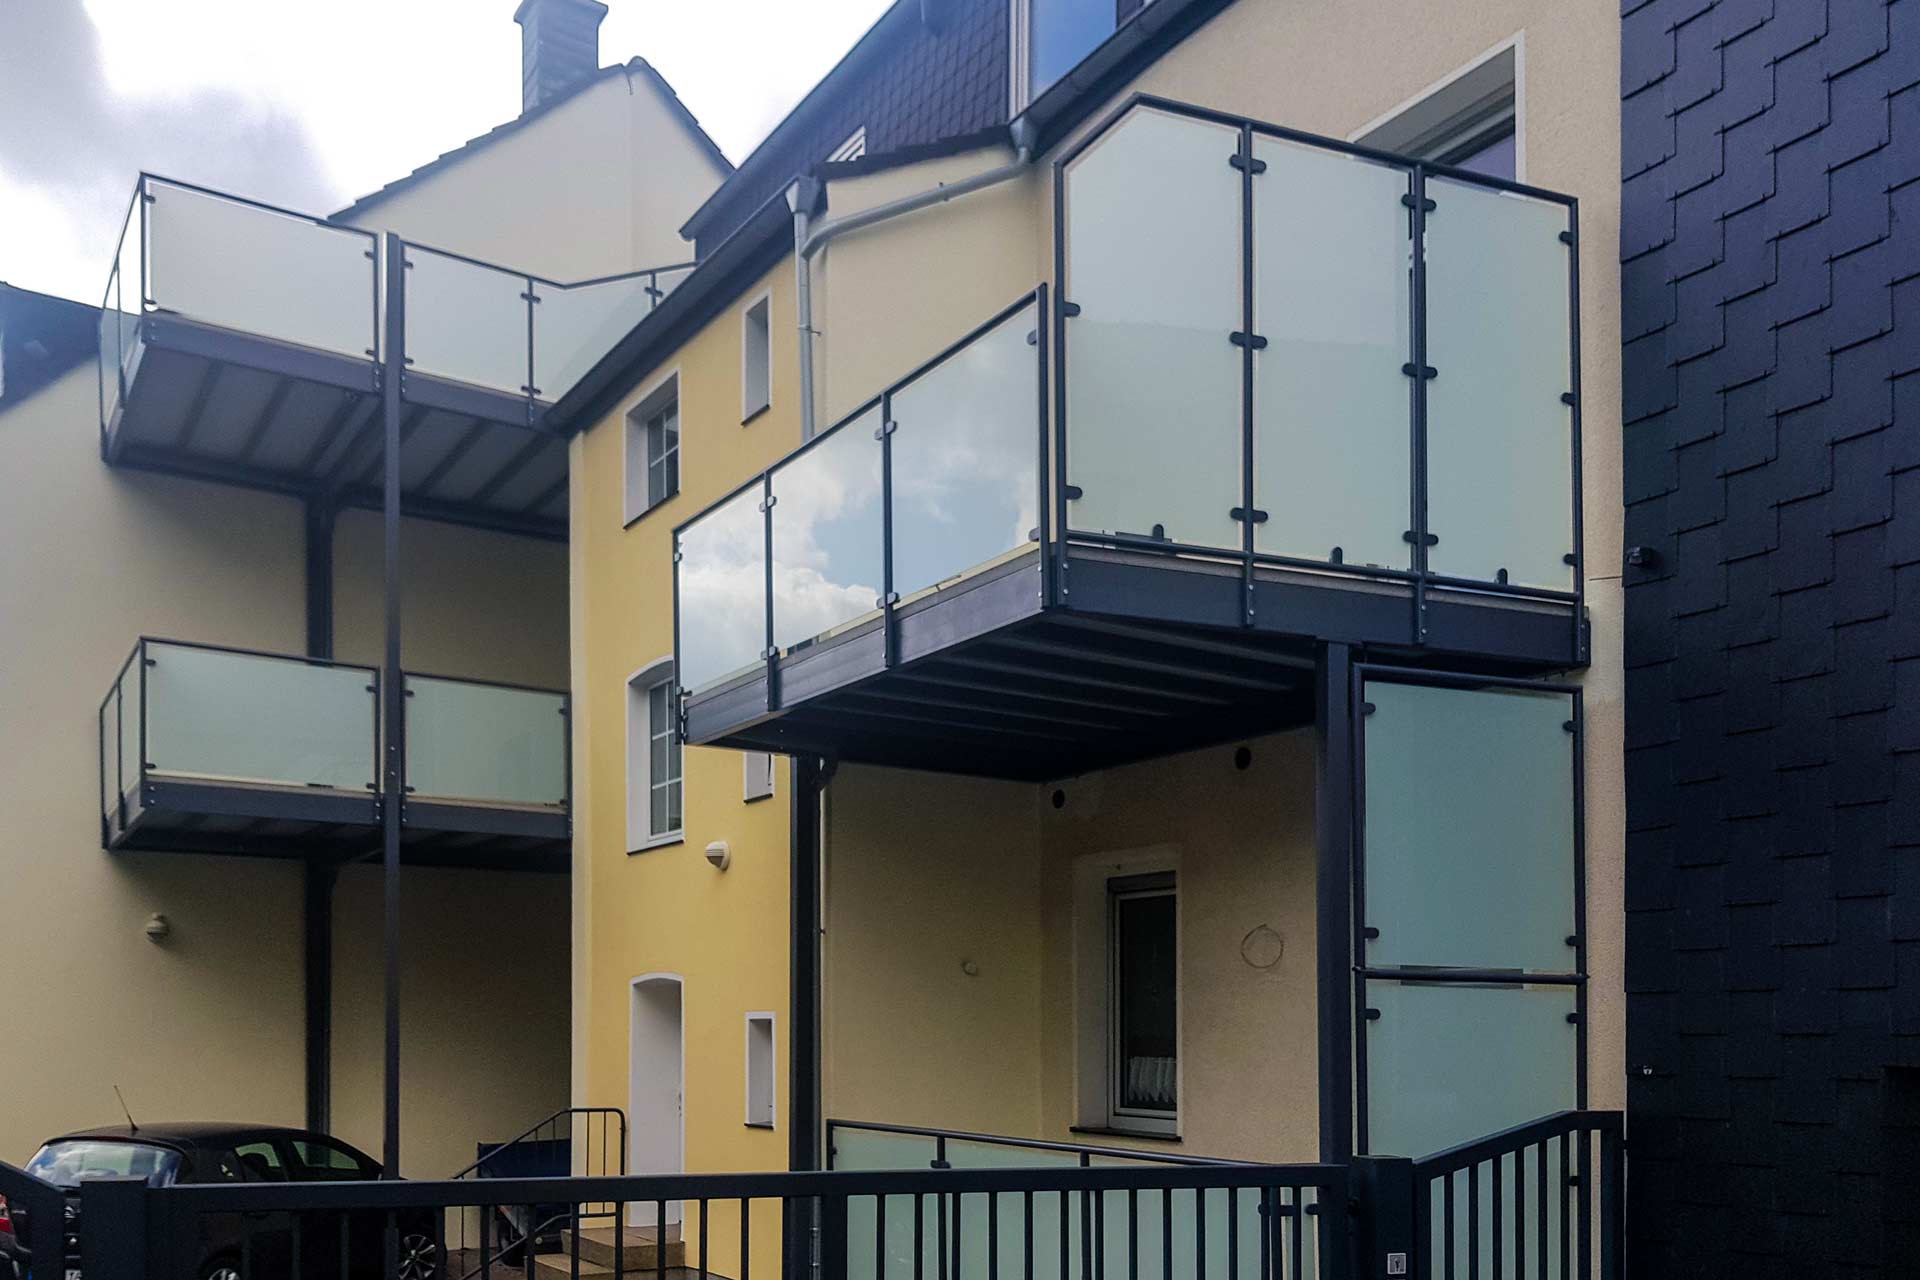 Wie man auch auf engem Raum ästhetisch ansprechende Lösungen findet, zeigt der Balkonbau-Spezialist Nappenfeld aus Mühlheim in Essen. Dort montierte das Unternehmen zwei Balkontürme.